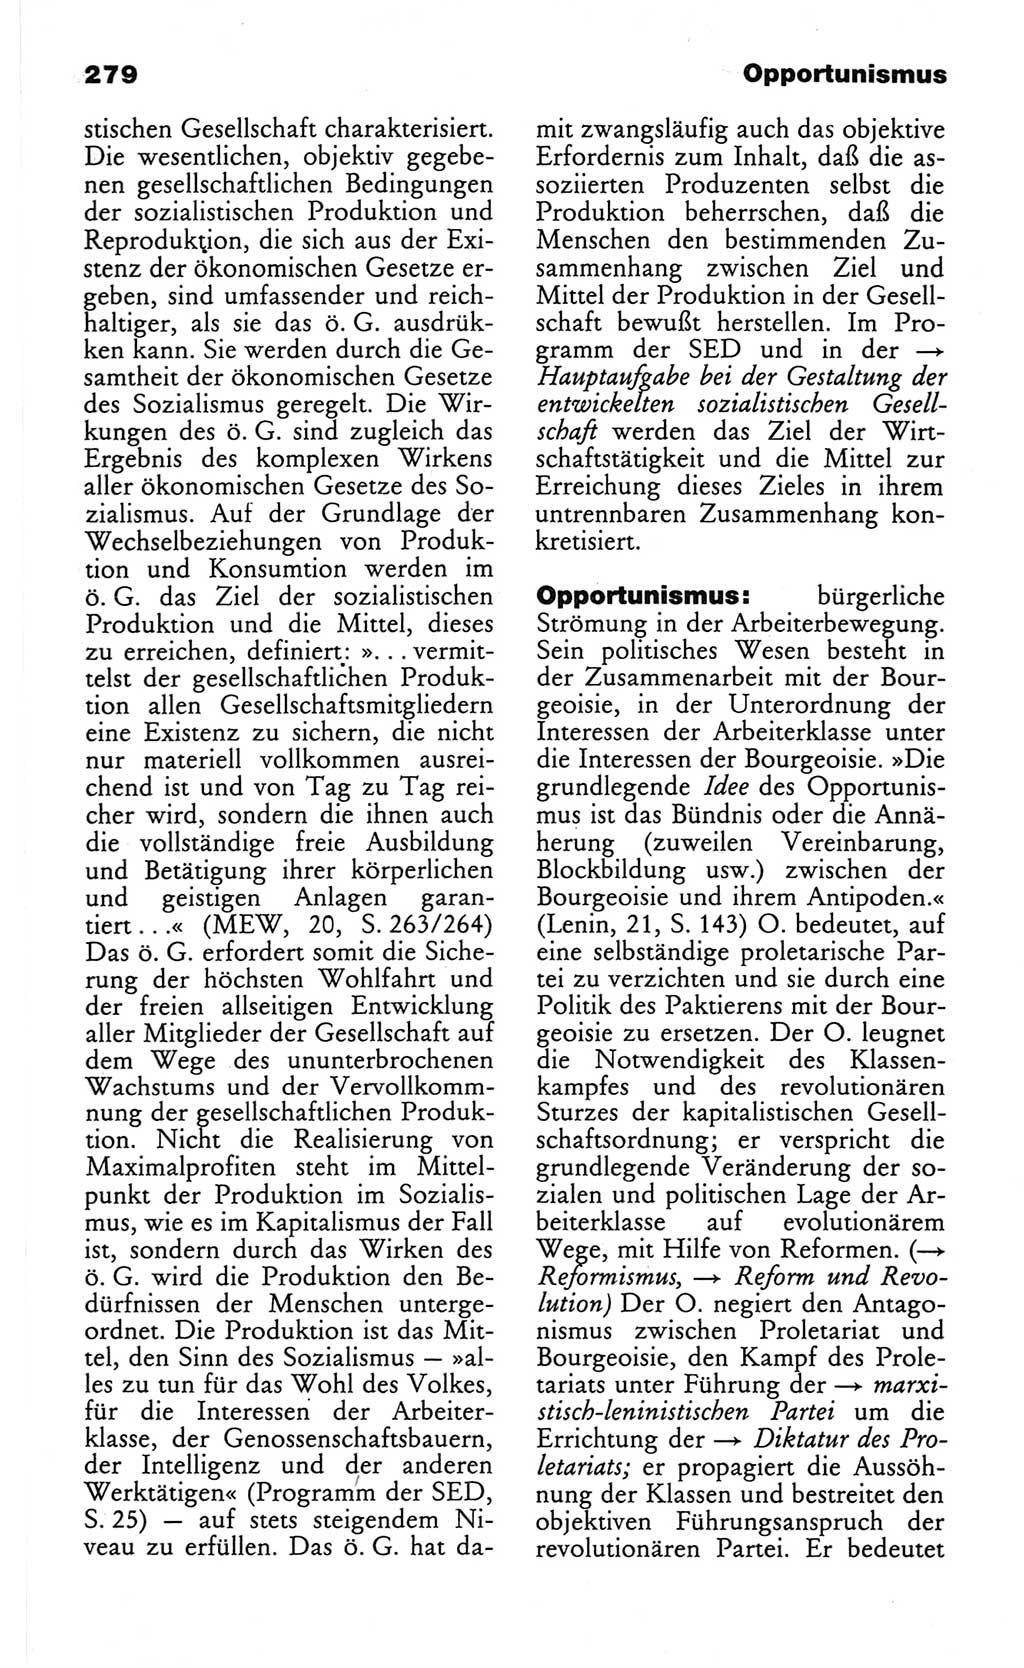 Wörterbuch des wissenschaftlichen Kommunismus [Deutsche Demokratische Republik (DDR)] 1982, Seite 279 (Wb. wiss. Komm. DDR 1982, S. 279)